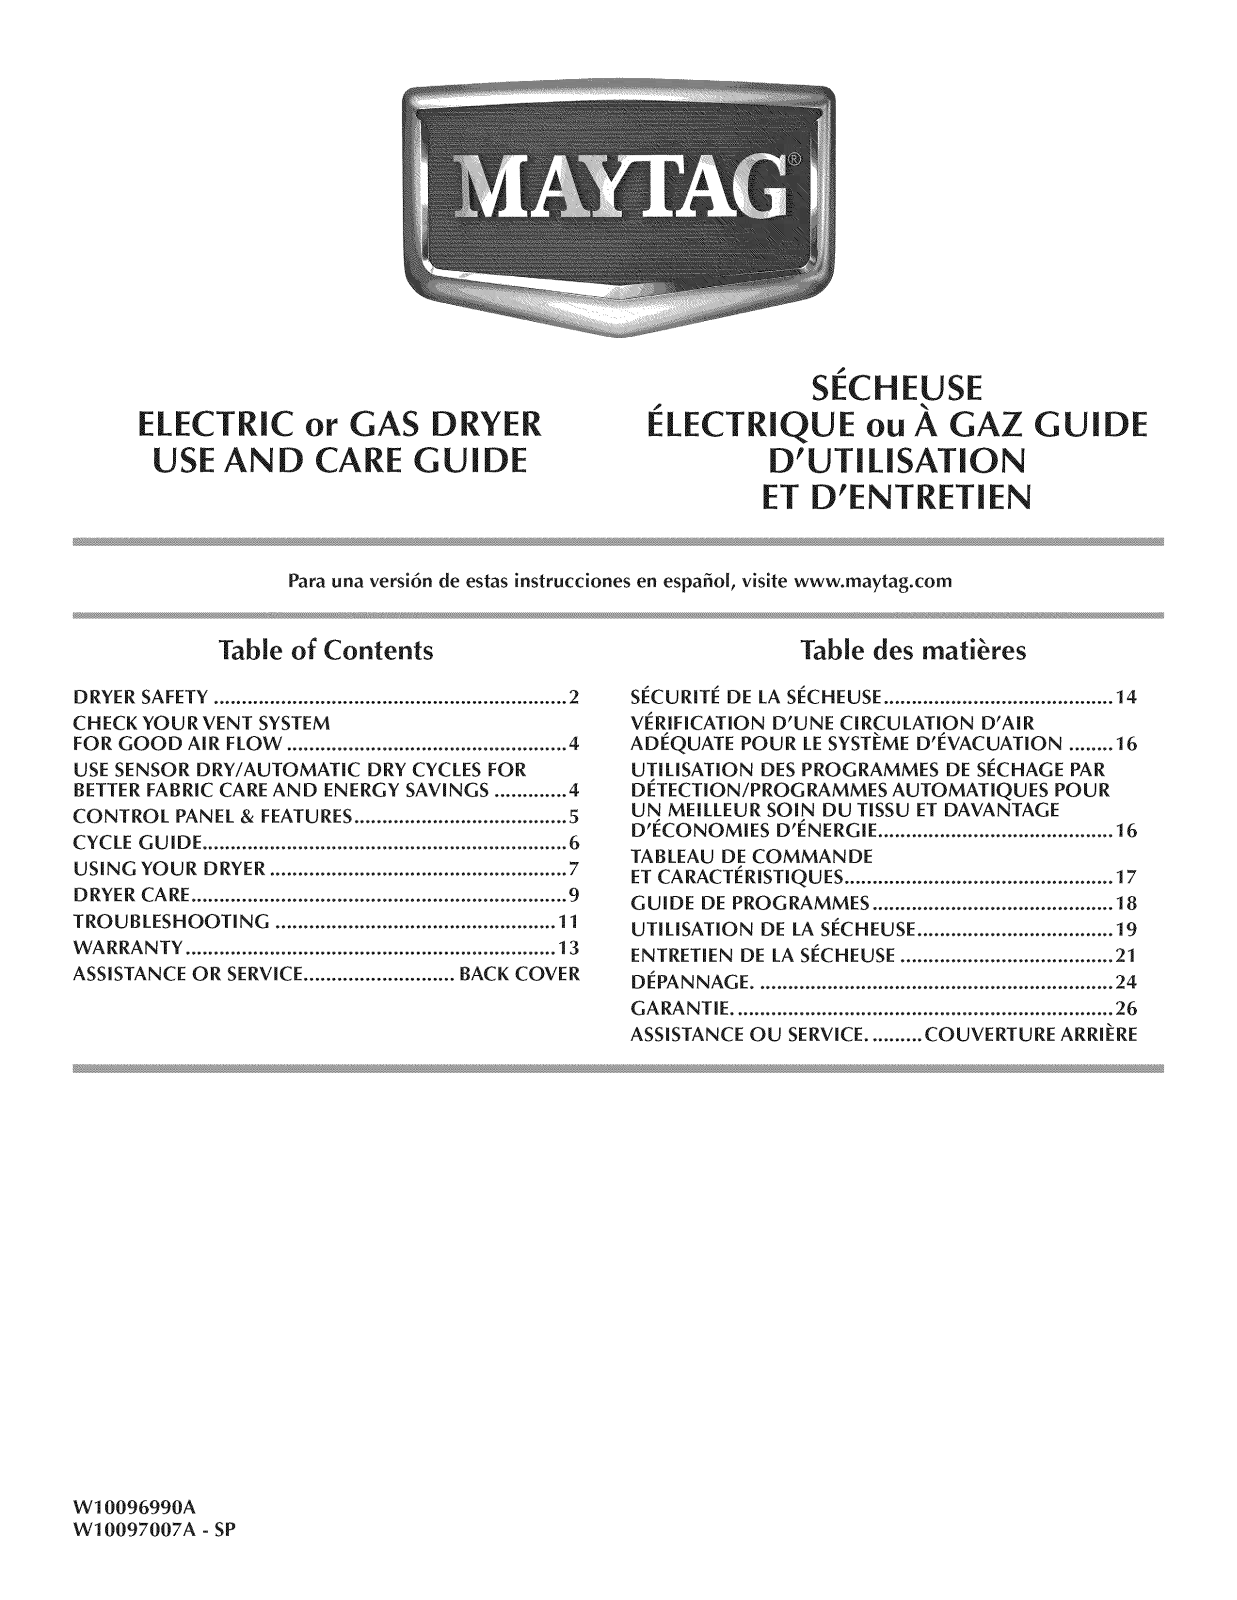 Maytag MGDX500BW0, MGDC400BW0, MGDC300XW3, MGDC300XW1, MGDC300XW0 Owner’s Manual